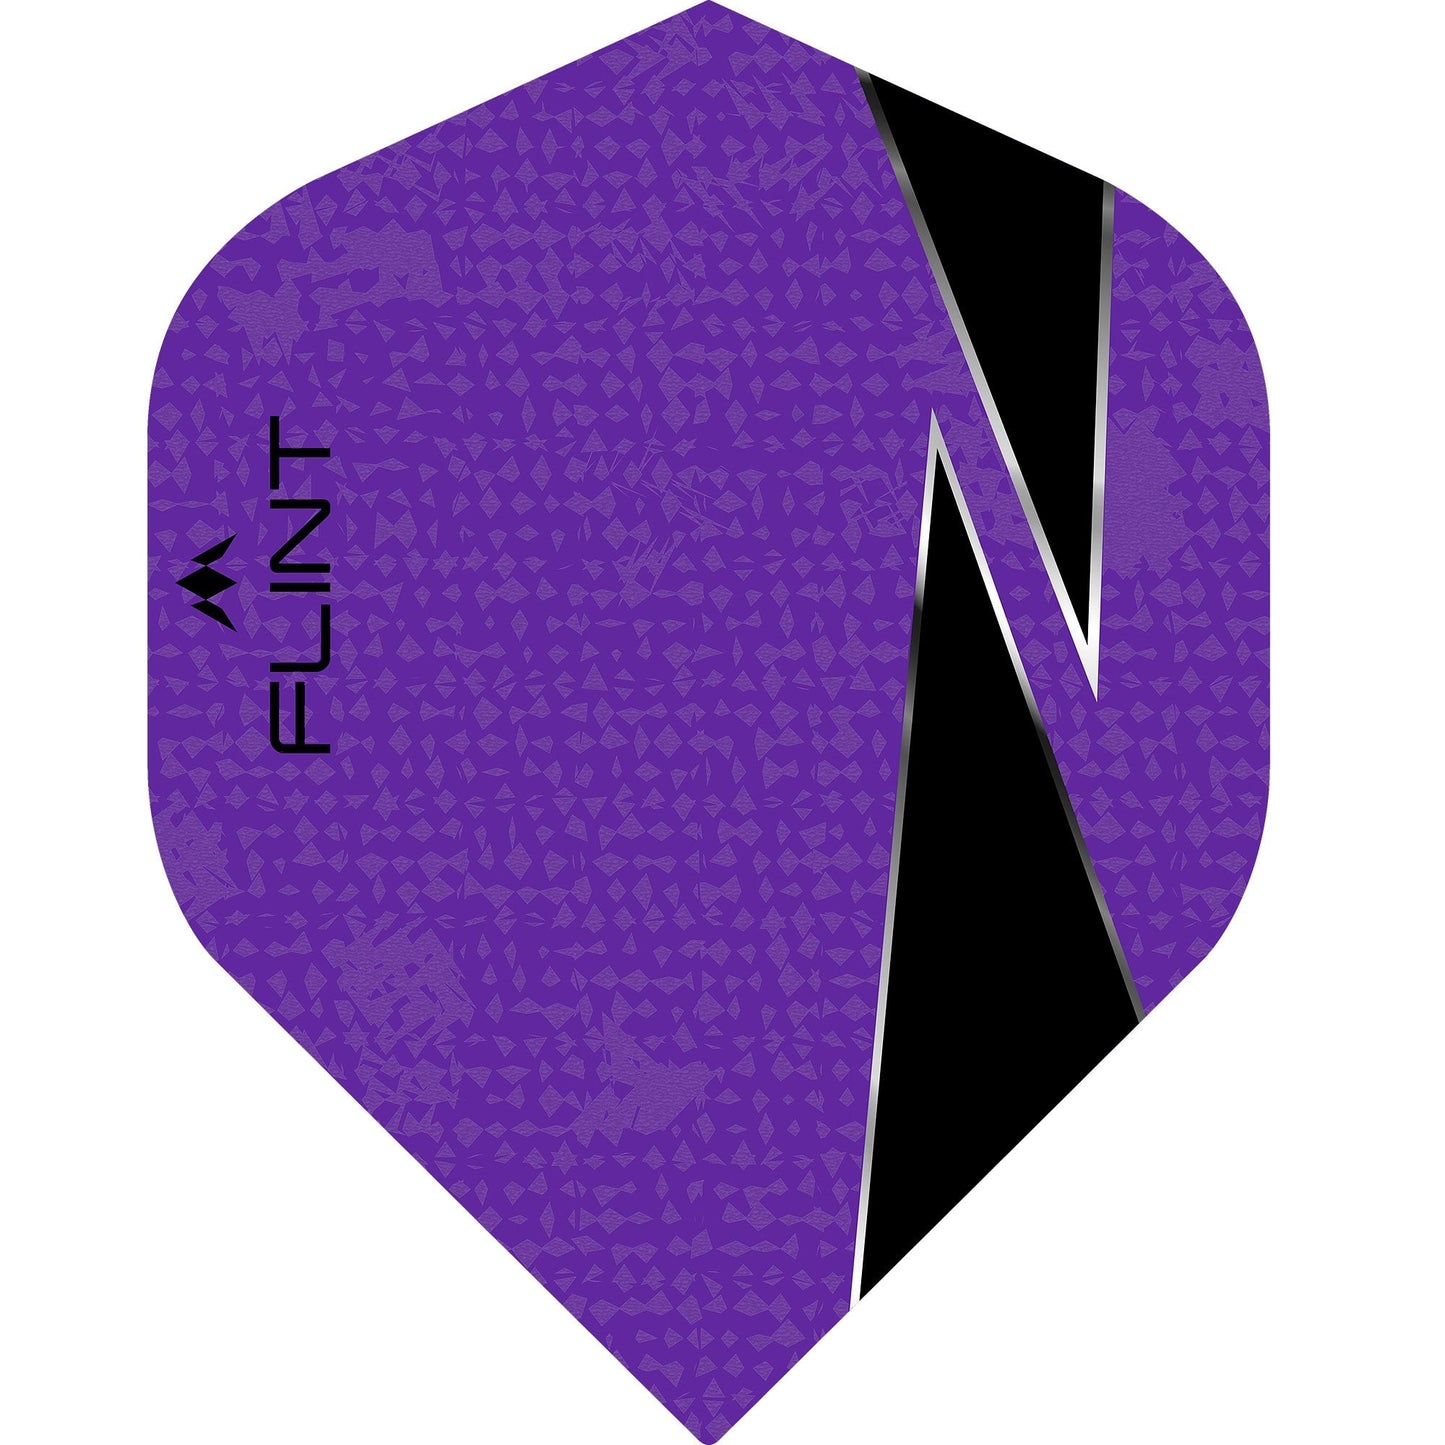 Mission Flint-X Dart Flights - 100 Micron - No2 - Std Purple